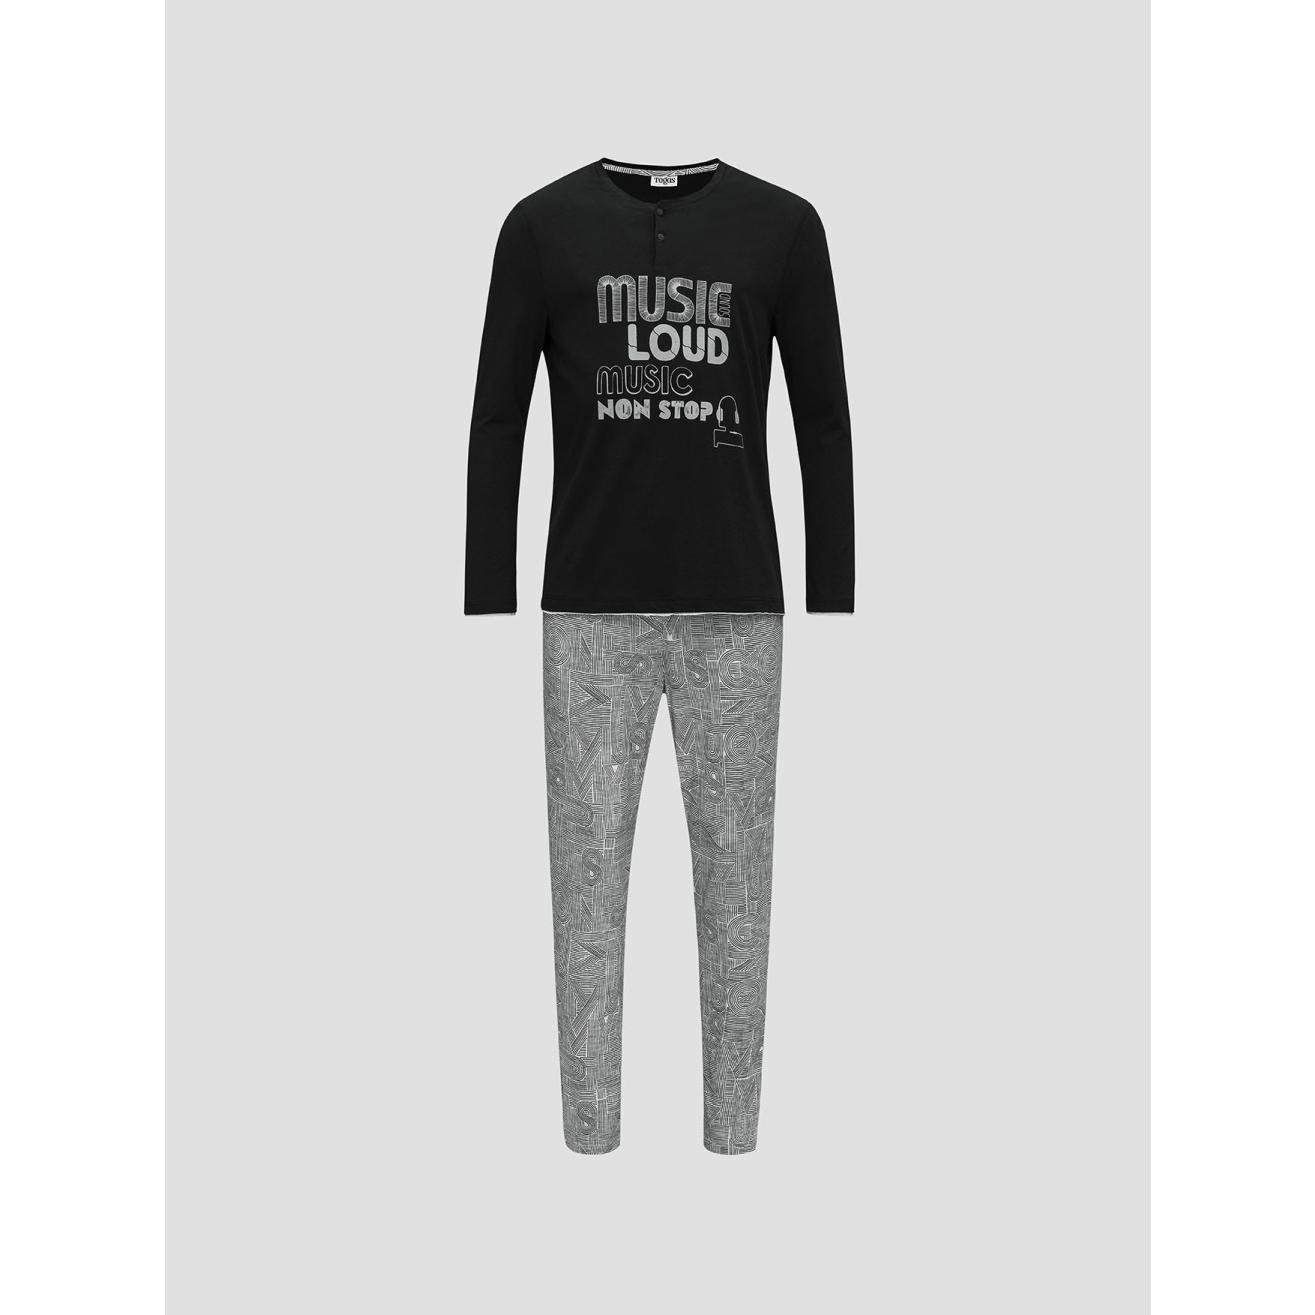 Пижама для мальчиков Togas Teens Харпер серо-черная 170 см, цвет серо-черный, размер 170 см - фото 1